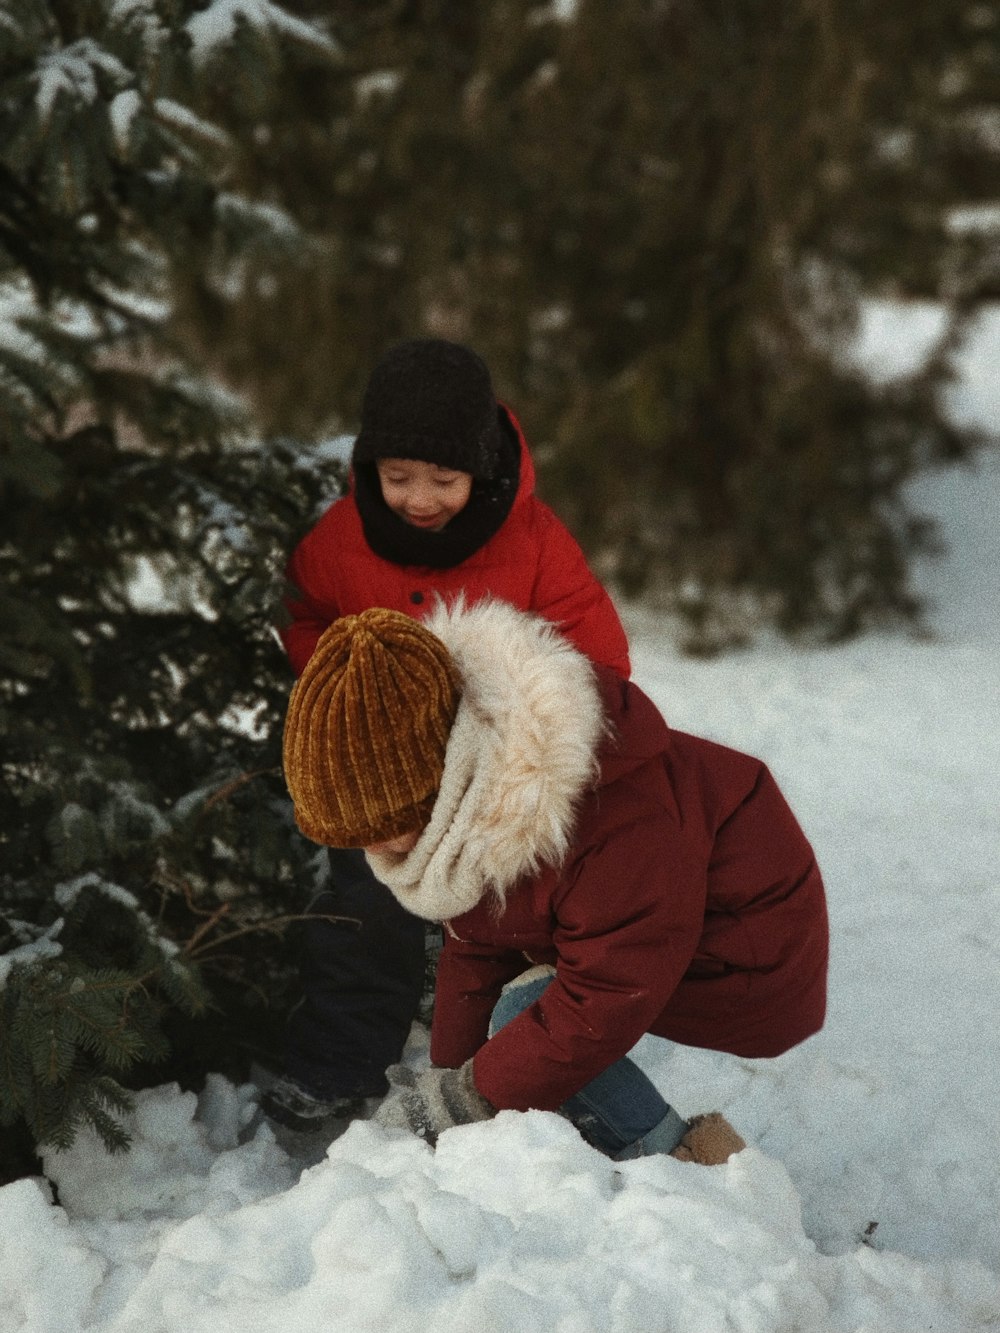 zwei Kinder spielen mit Schnee in der Nähe eines Baumes